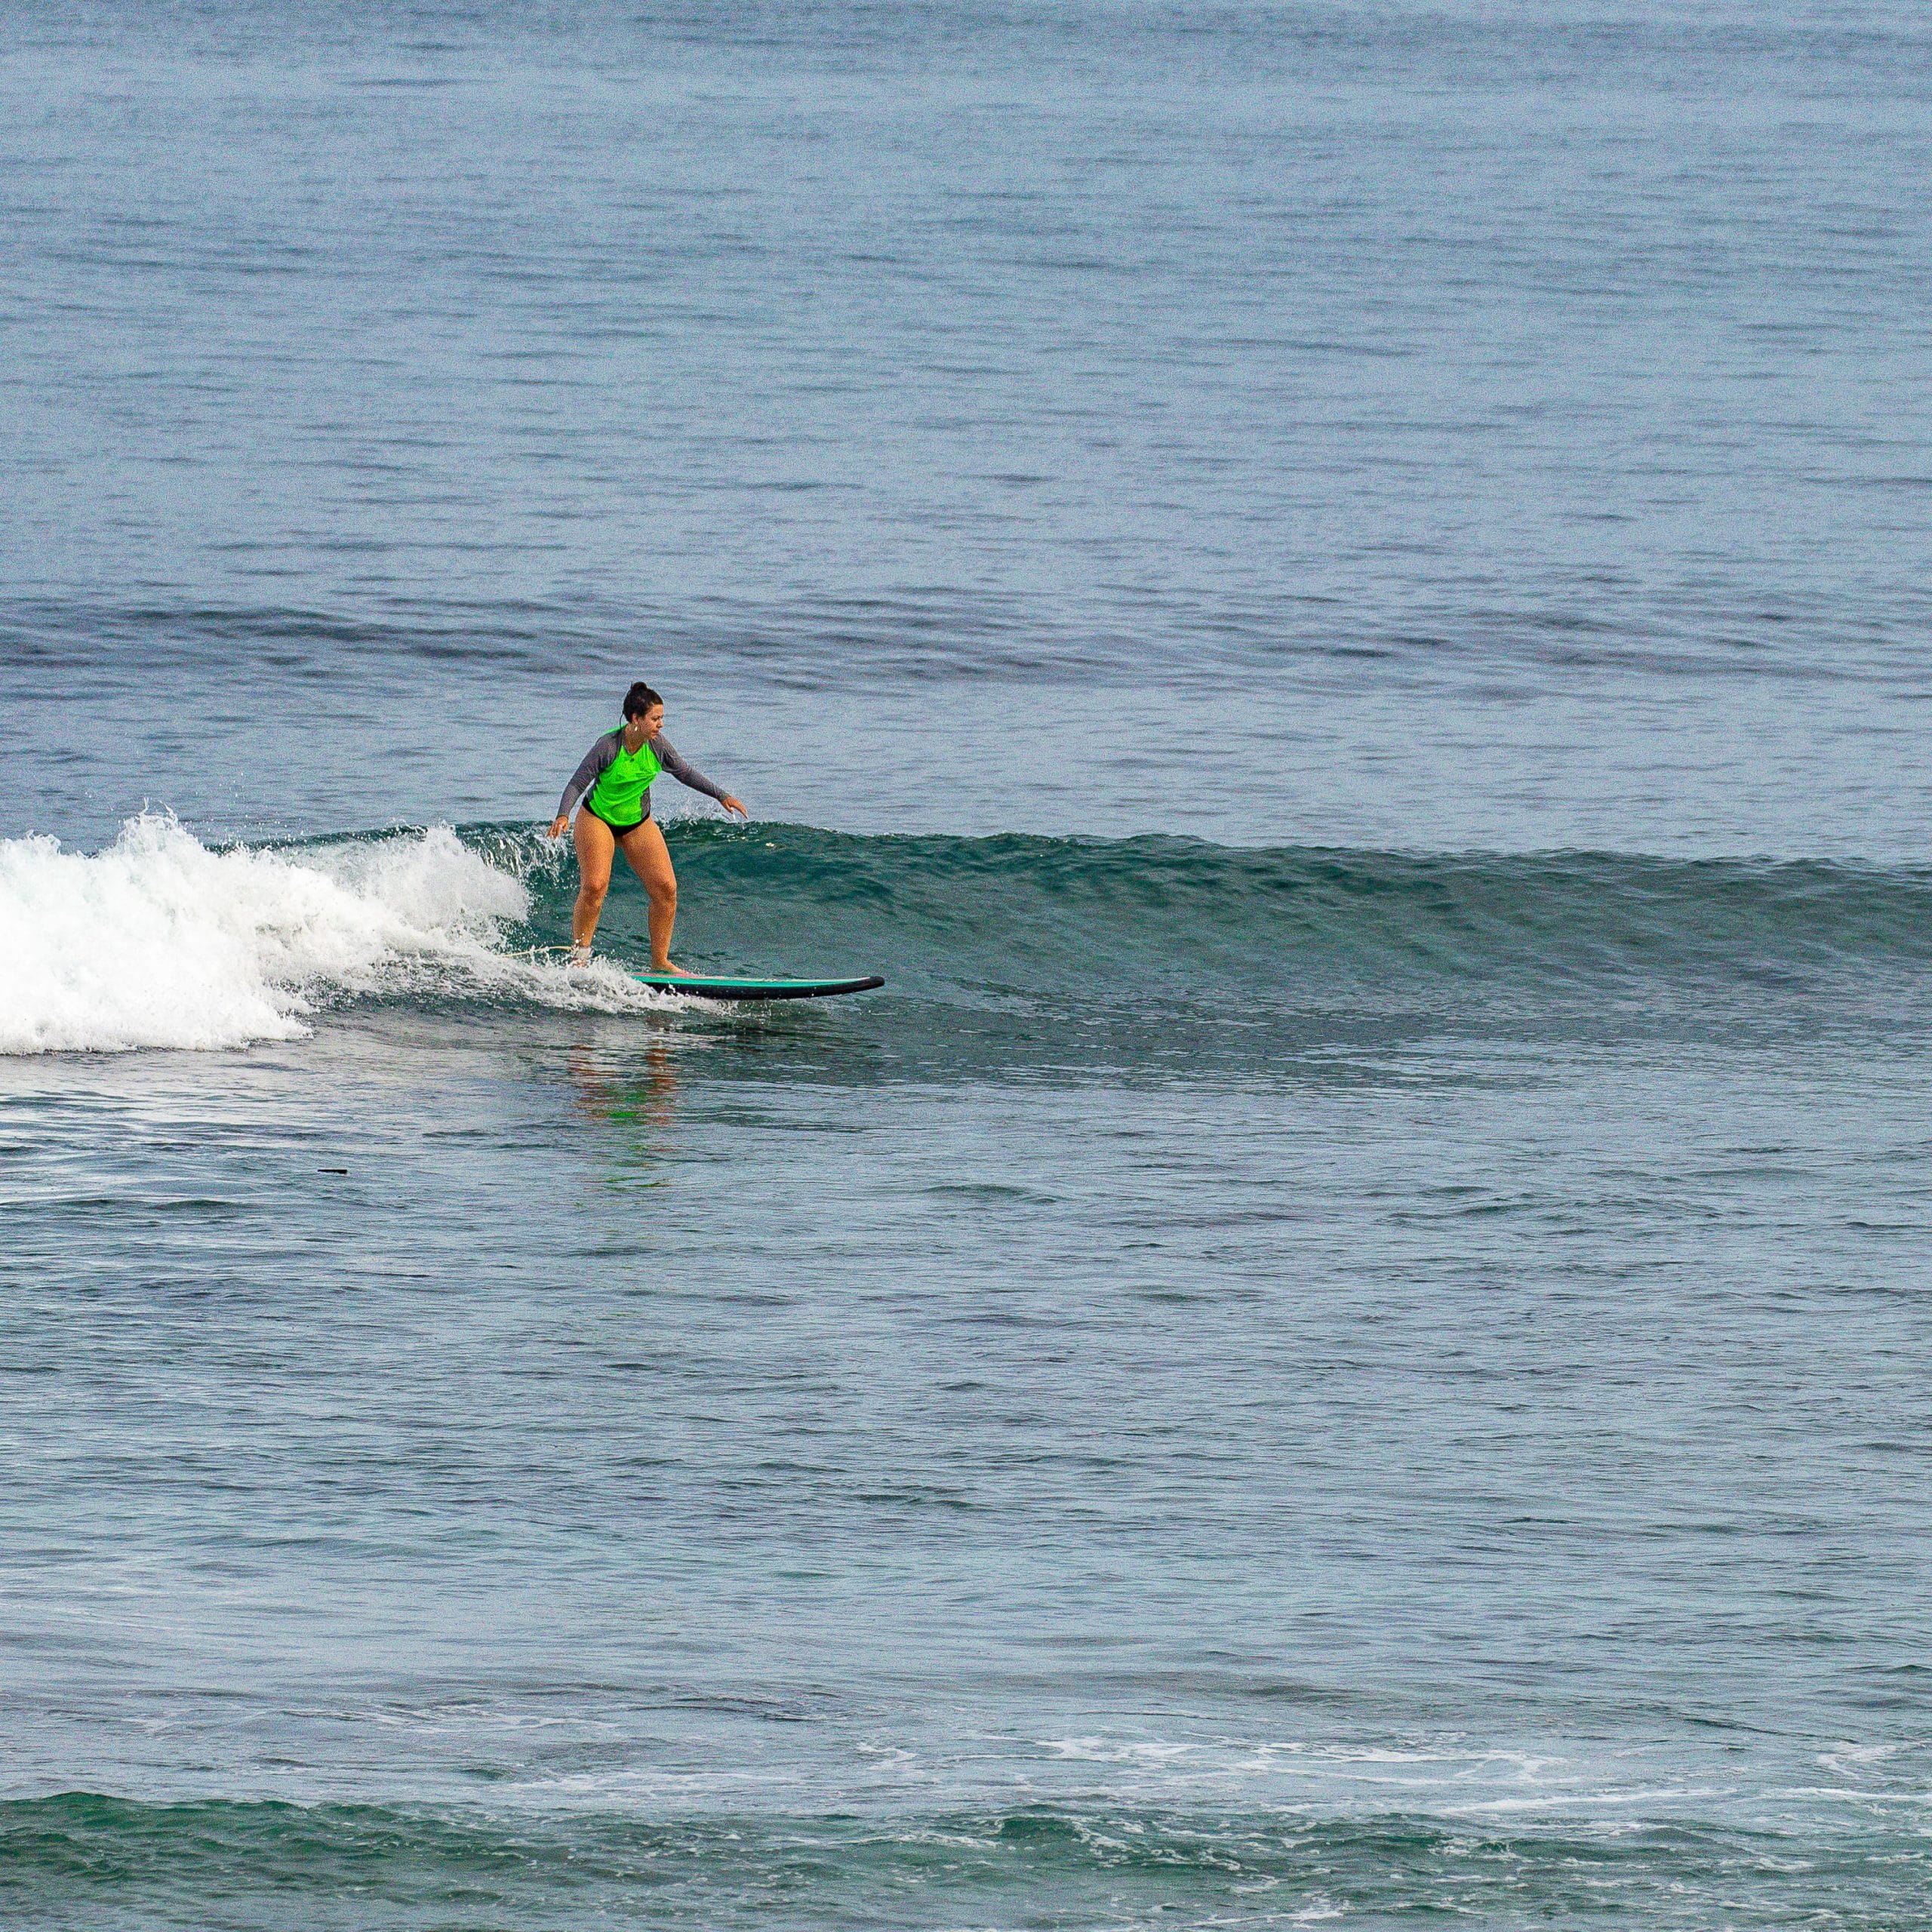 Surfer riding a wave at Padang.